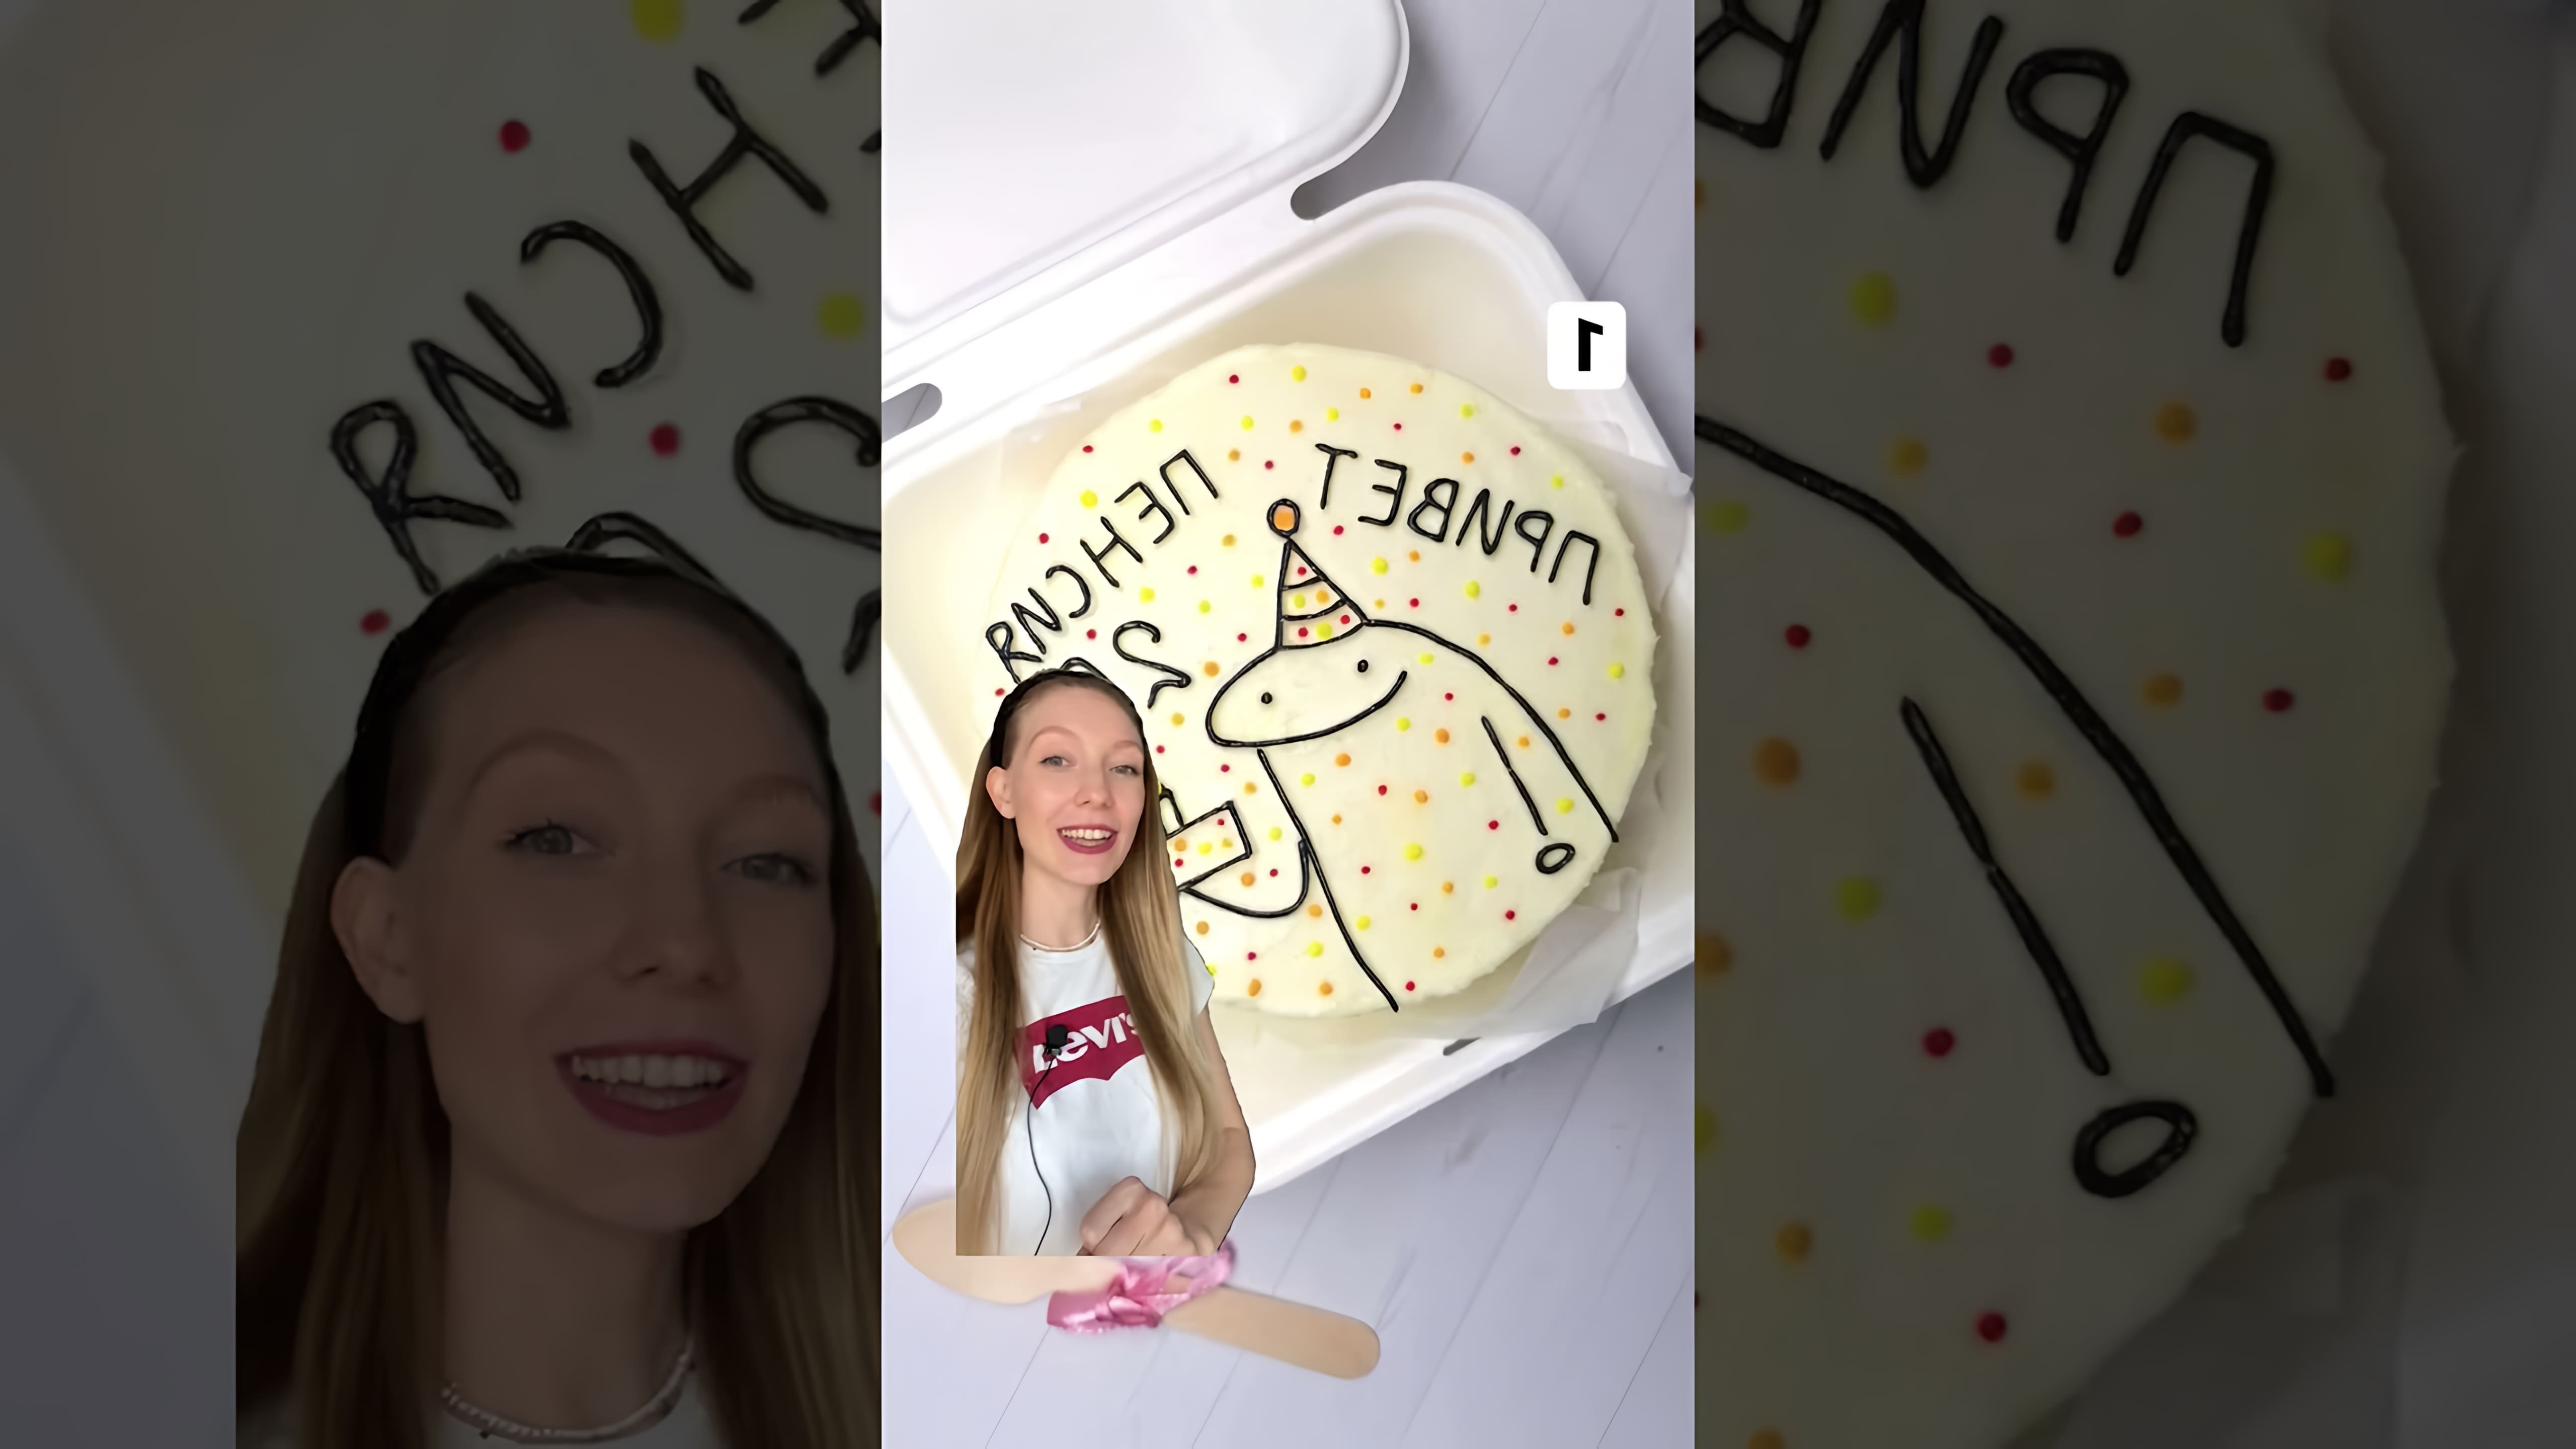 В этом видео демонстрируются различные варианты Бенто тортов, которые были созданы учениками